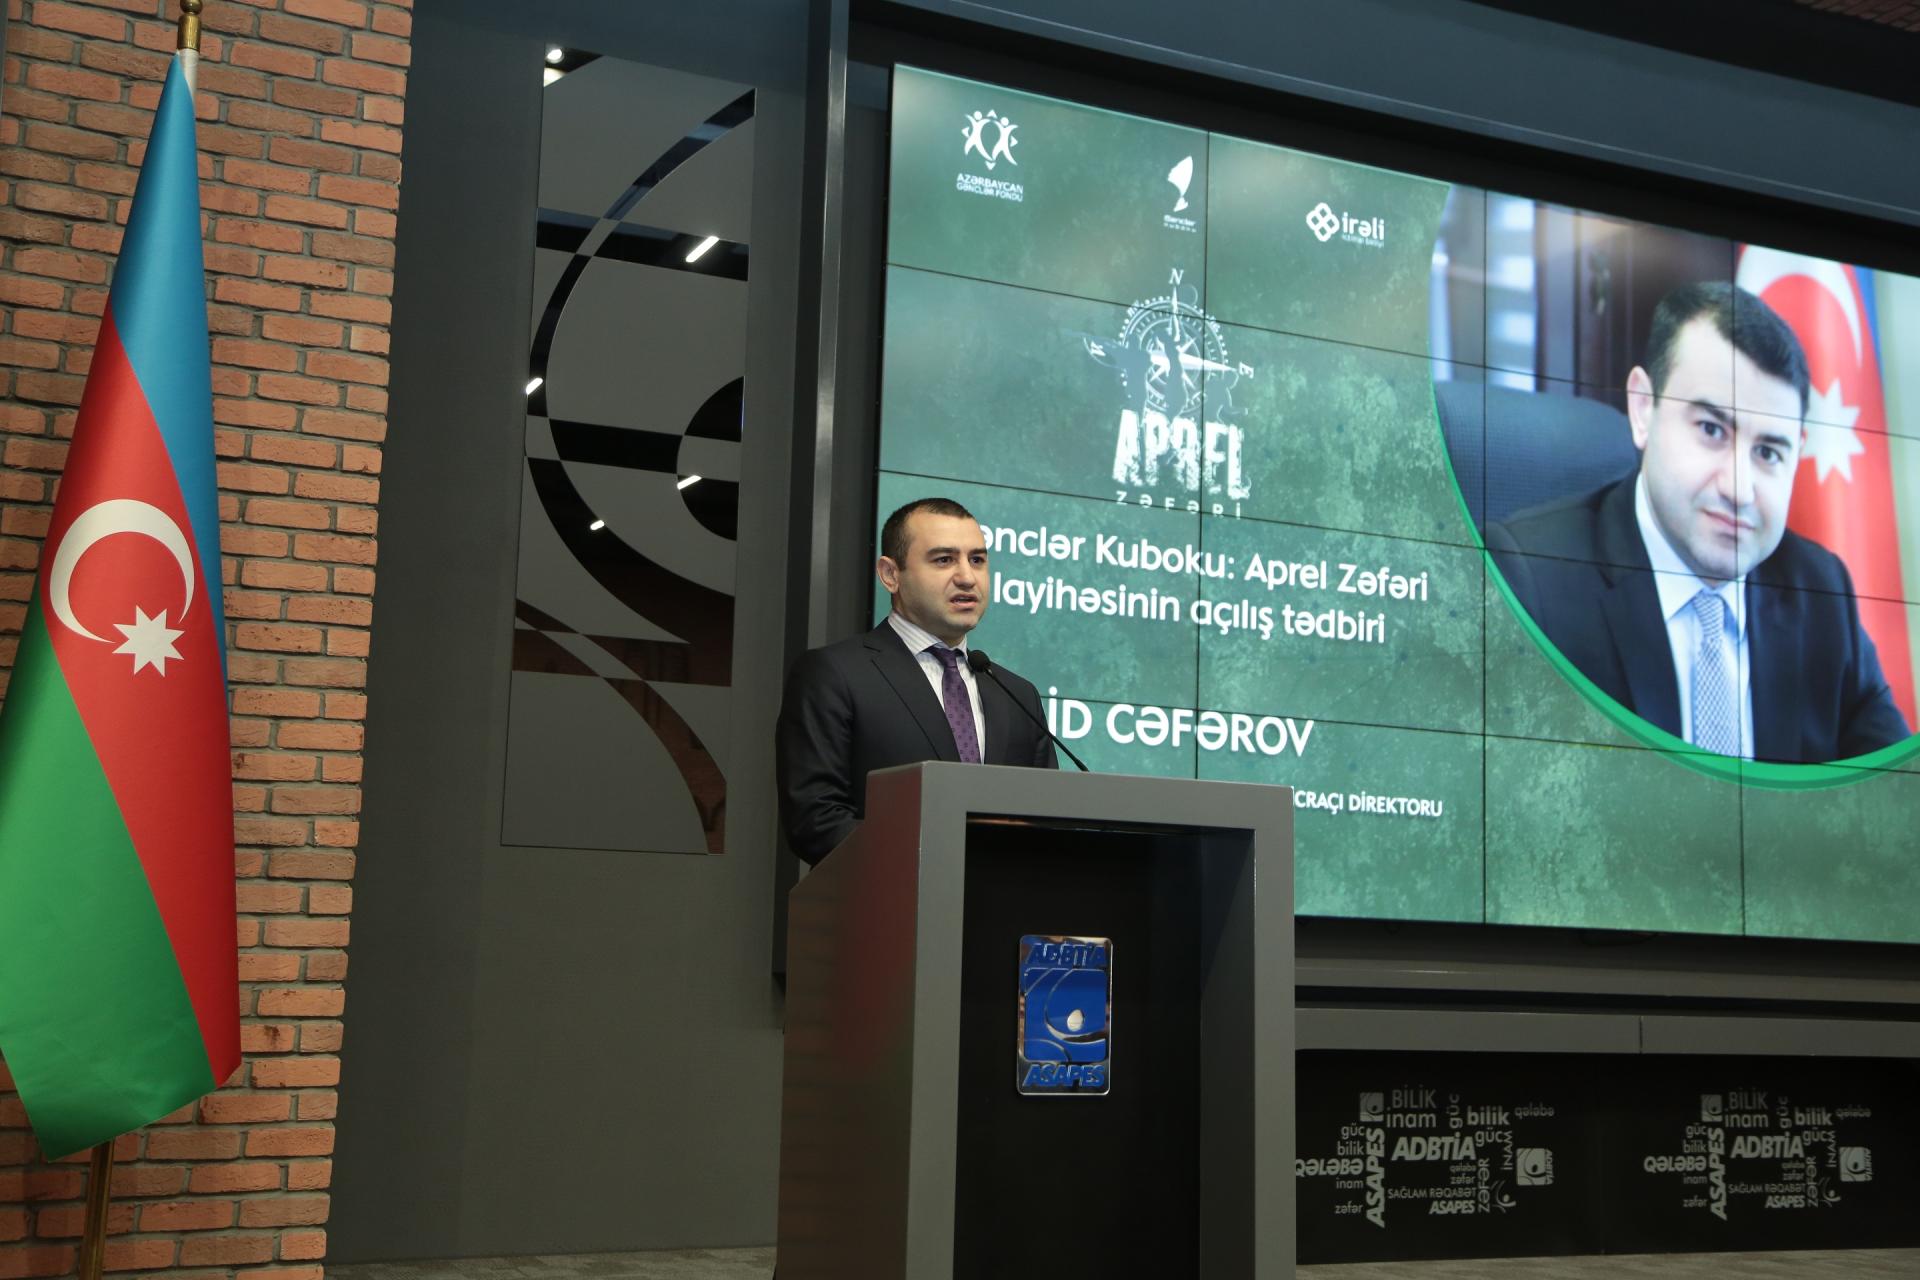 В Азербайджане стартовал большой проект "Кубок молодежи. Апрельская победа" (ФОТО)